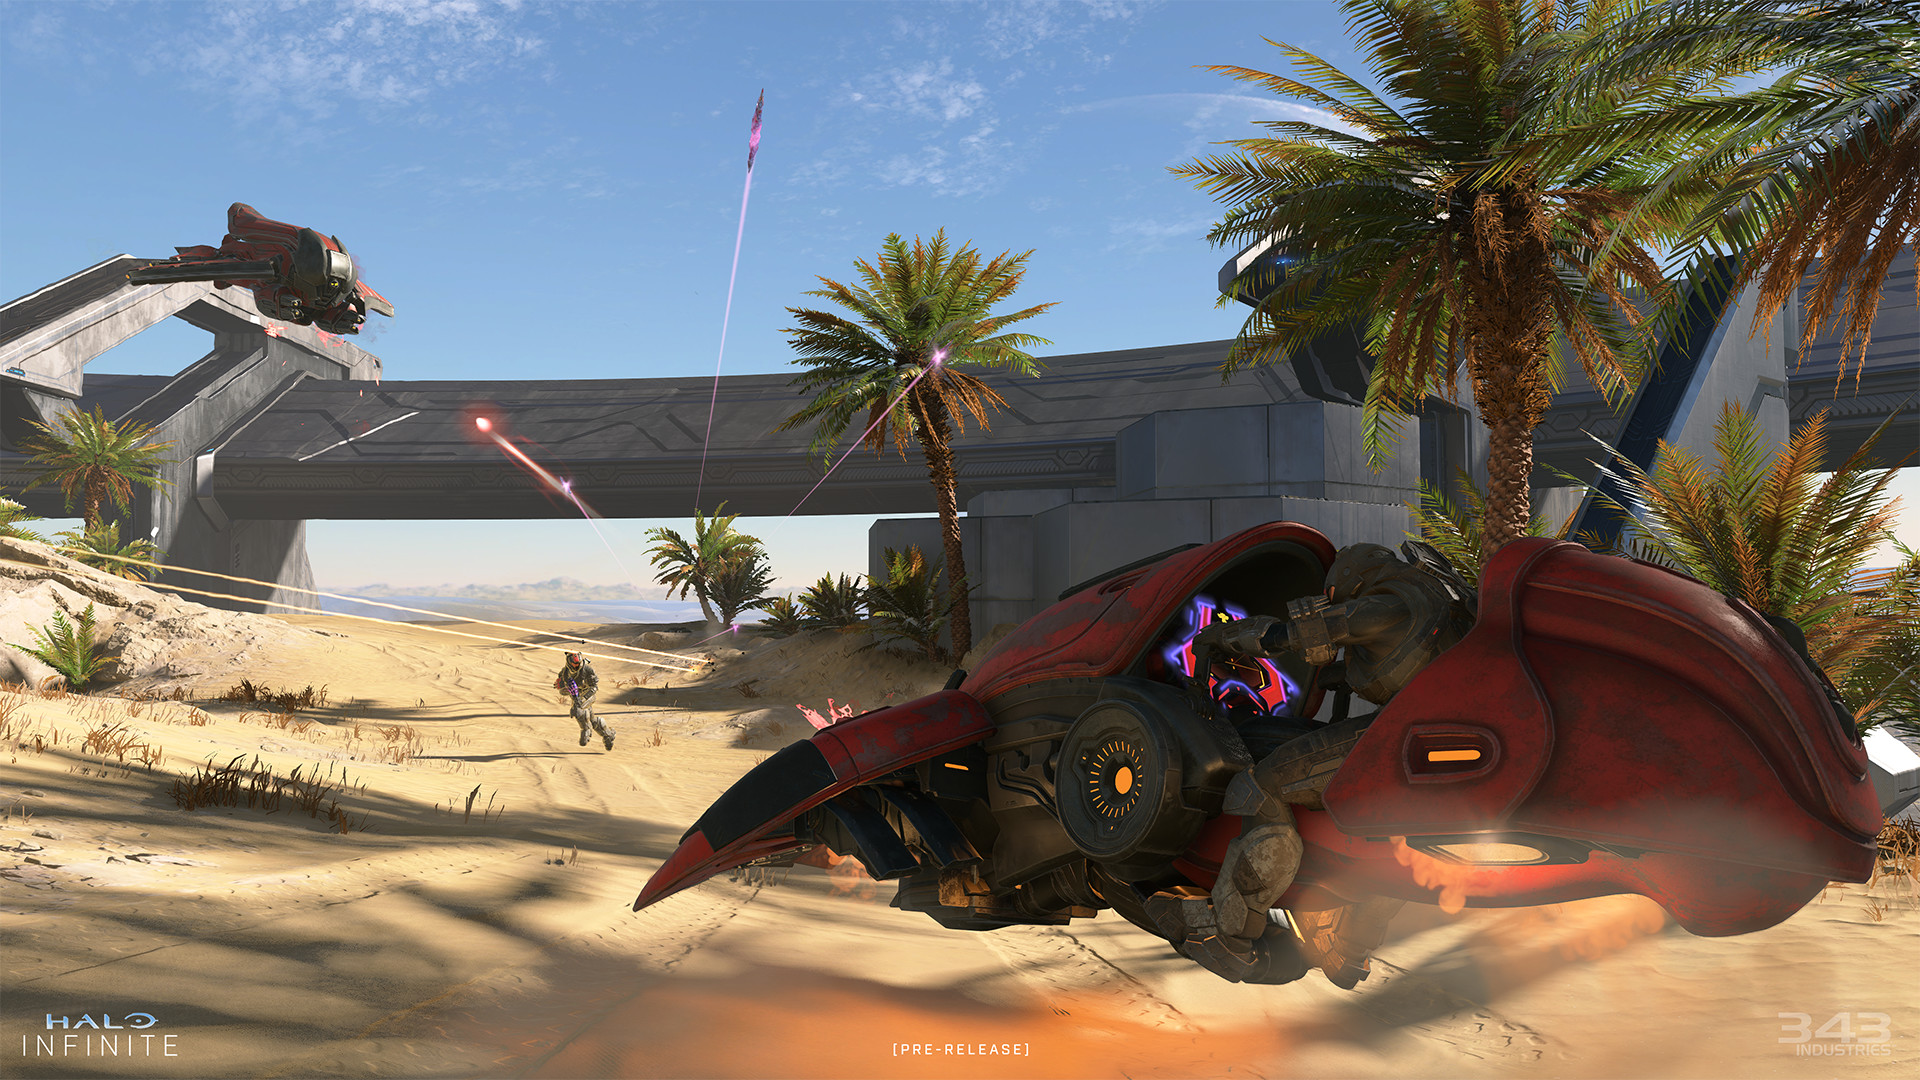 Immagine pubblicata in relazione al seguente contenuto: Xbox Game Studios pubblica i requisiti minimi e consigliati di Halo Infinite | Nome immagine: news32408_Halo-Infinite-Screenshot_3.jpg